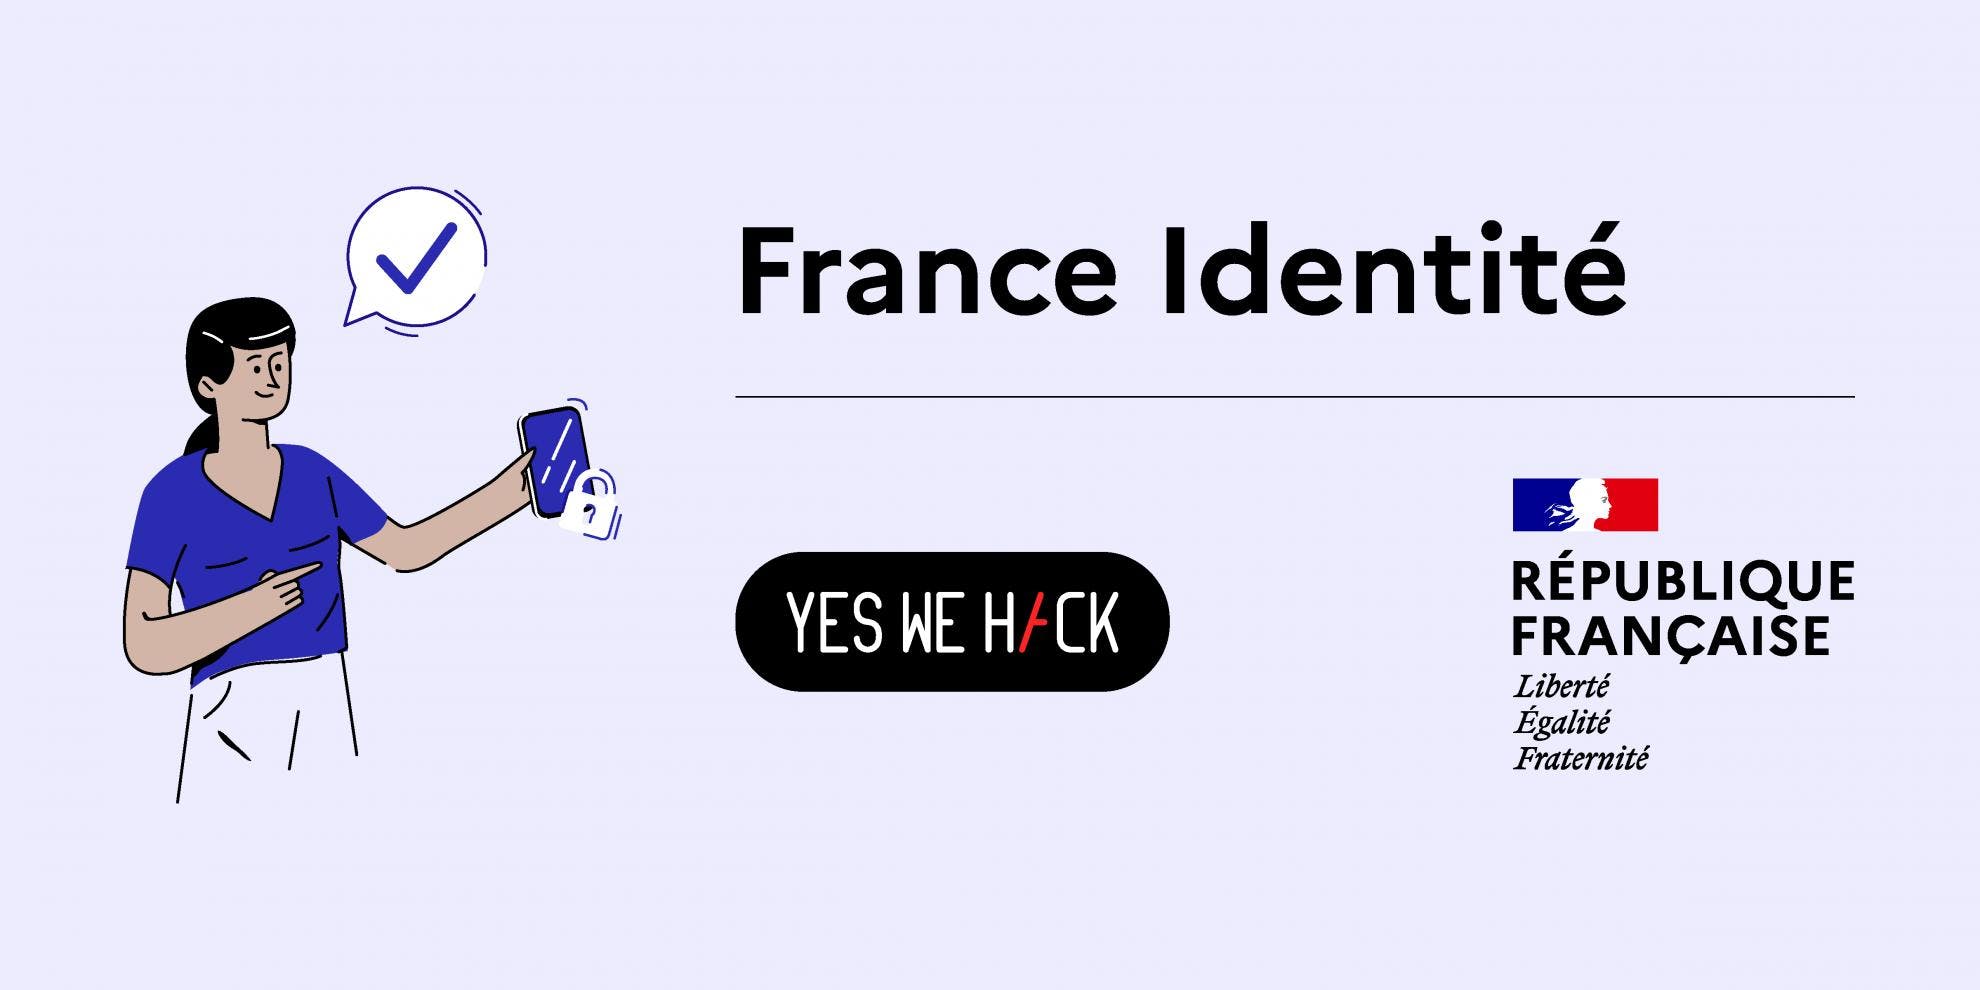 France Identité application